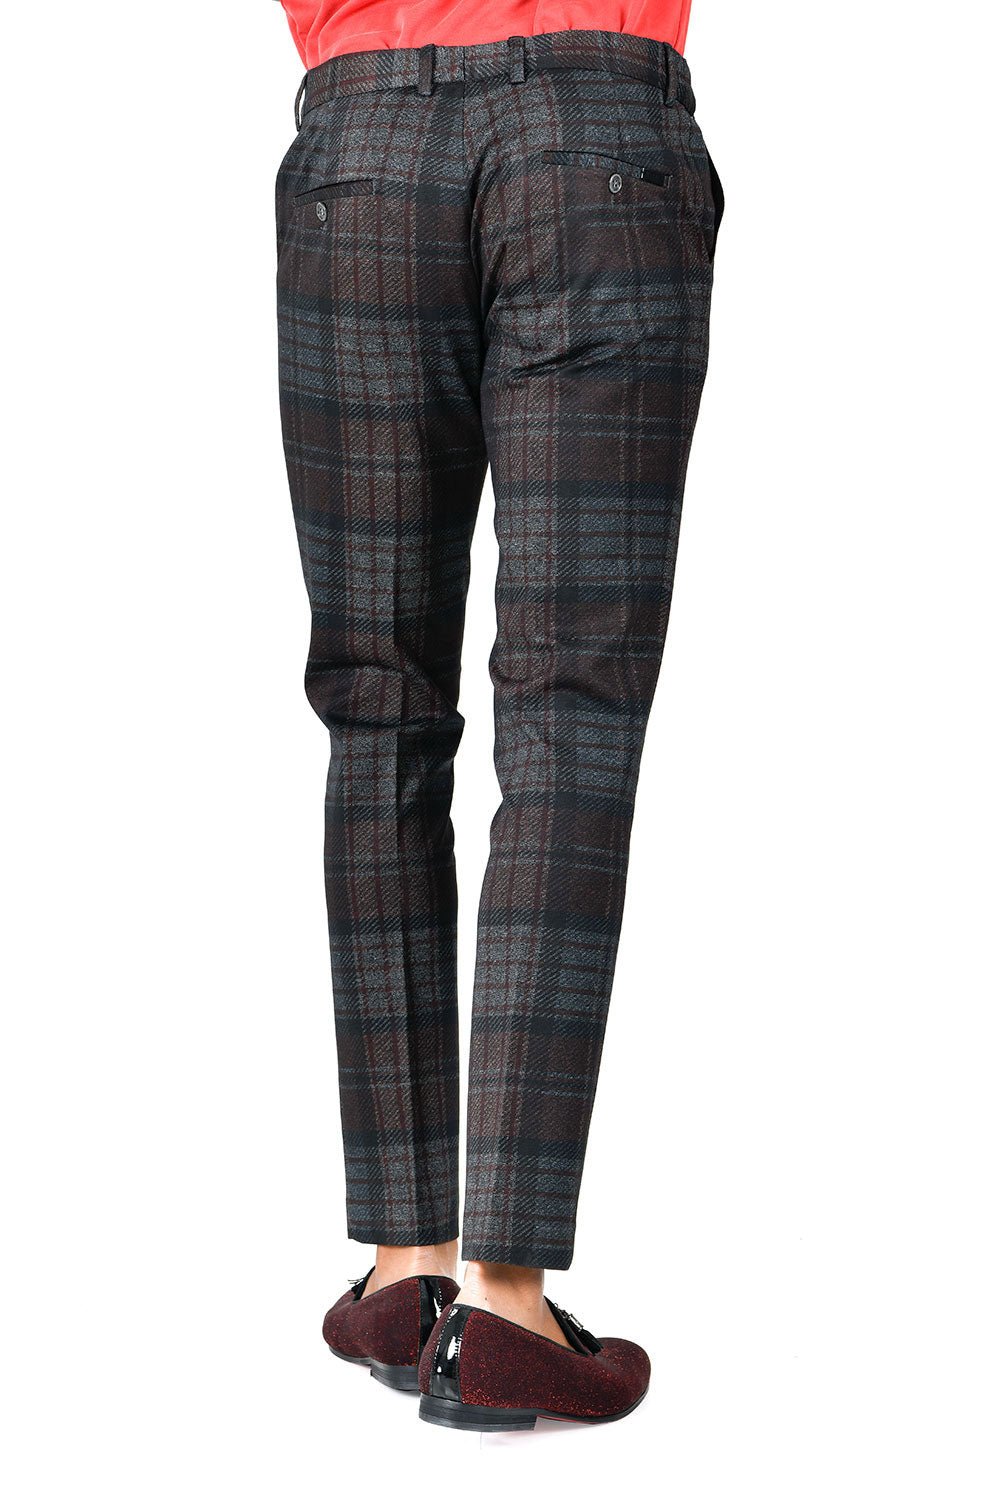 BARABAS men's checkered plaid brown grey chino pants CP137